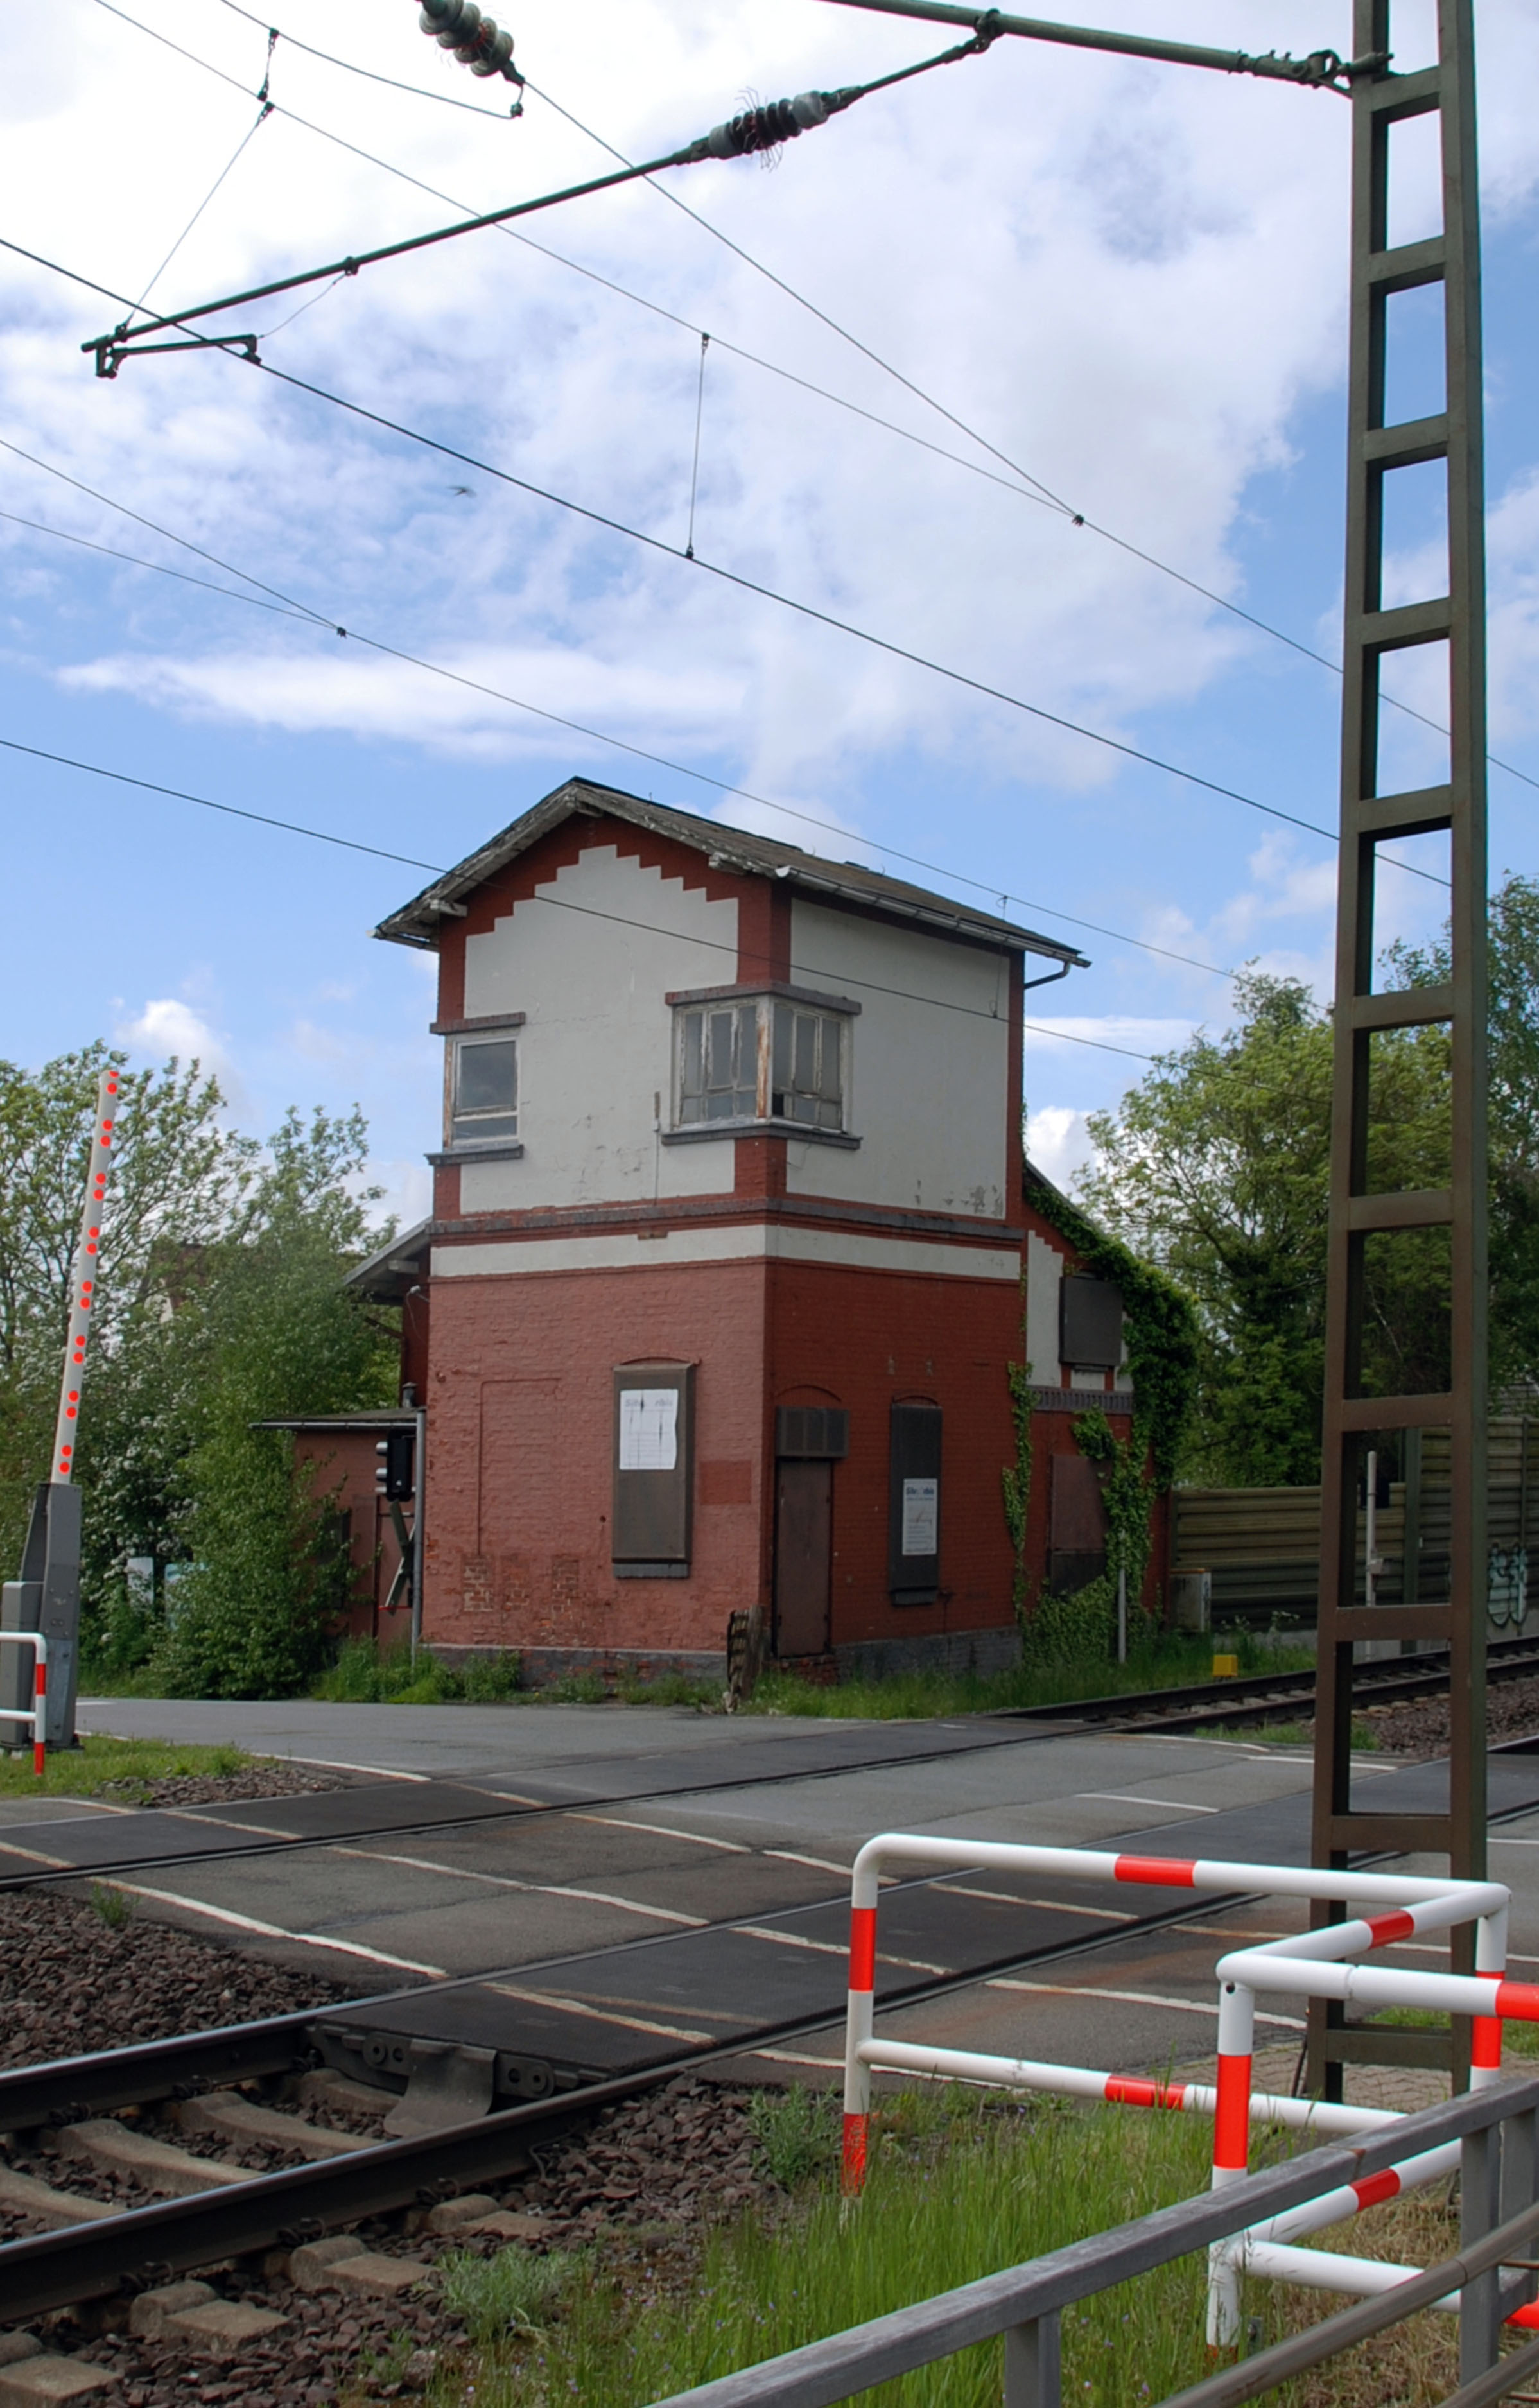 Das ehemalige Fahrdienstleisterstellwerk "Enf" des Bahnhofs Eilvese im Mai 2021